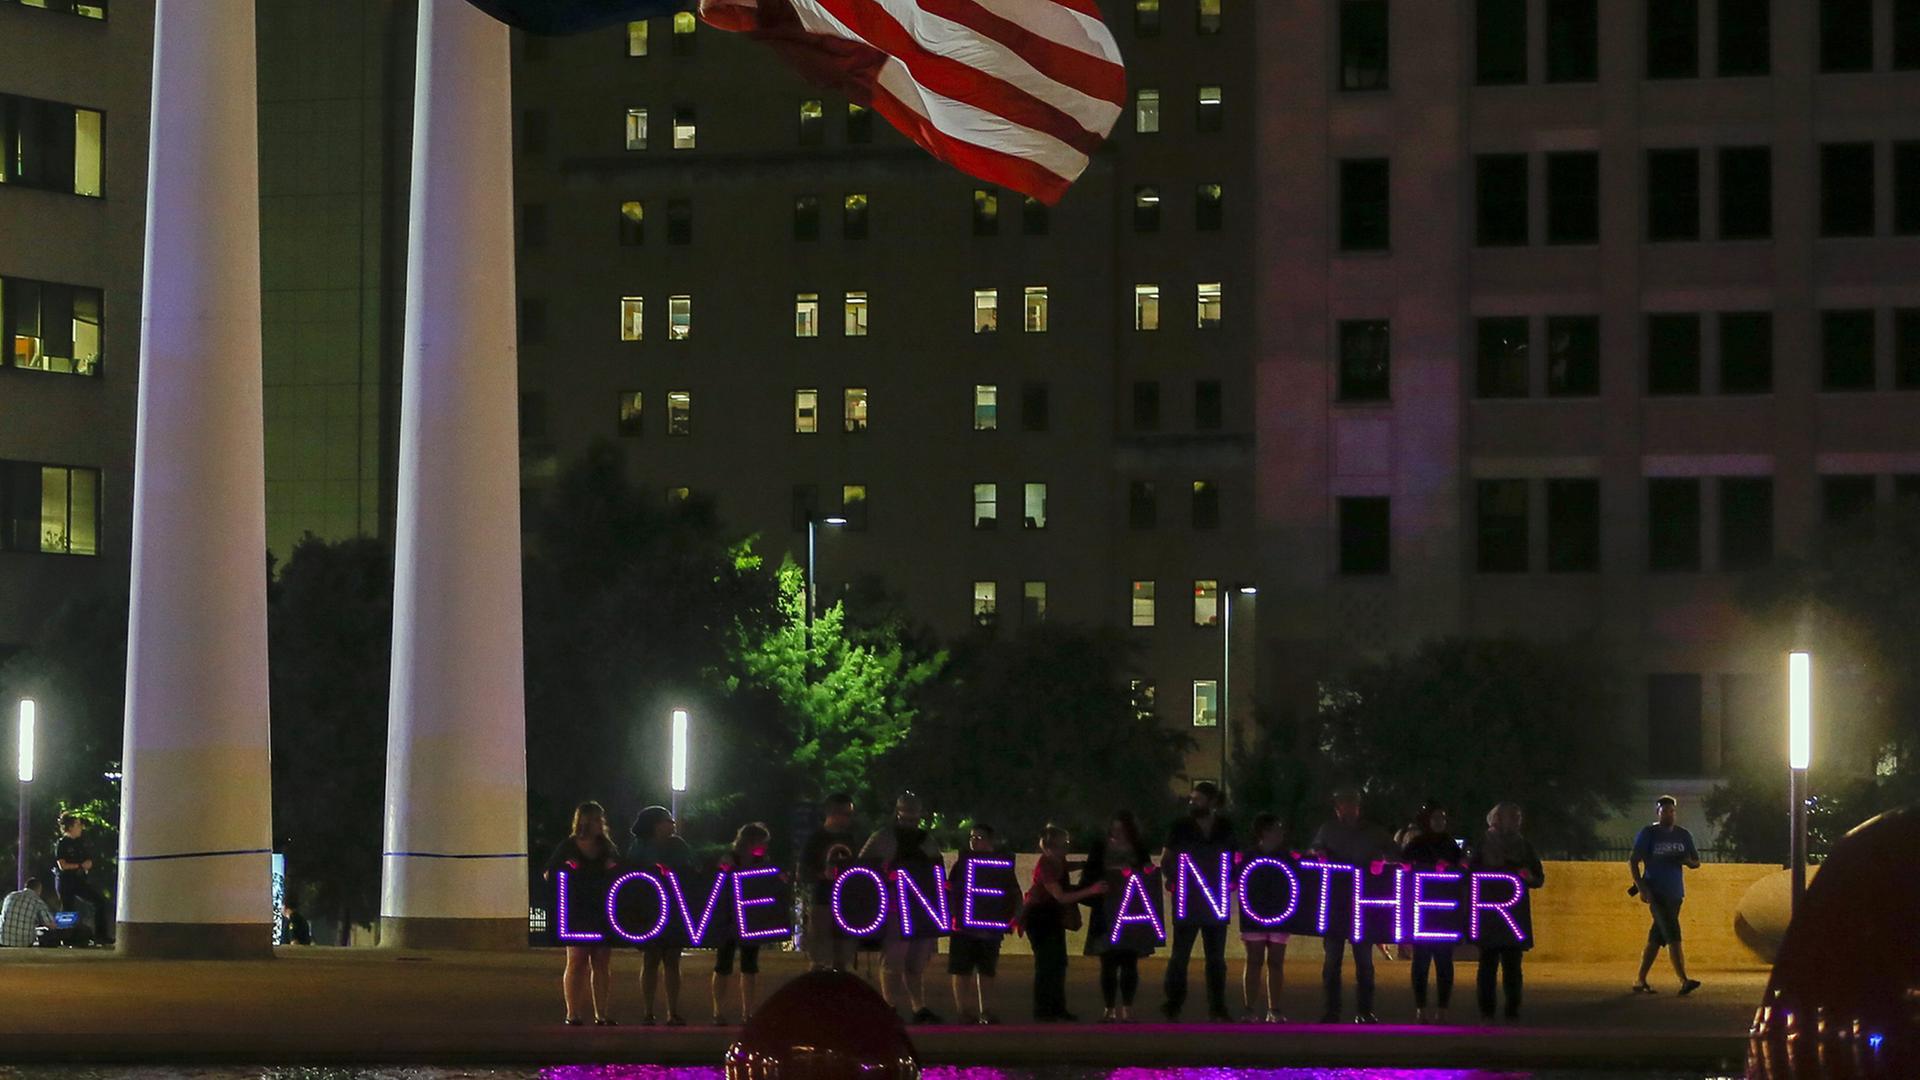 Menschen halten bei einer Nachtwache auf dem Platz vor der City Hall in Dallas LED-Lichter mit dem Schriftzug "Love one another" - liebt einander - hoch, aufgenommen am 11. Juli 2016.